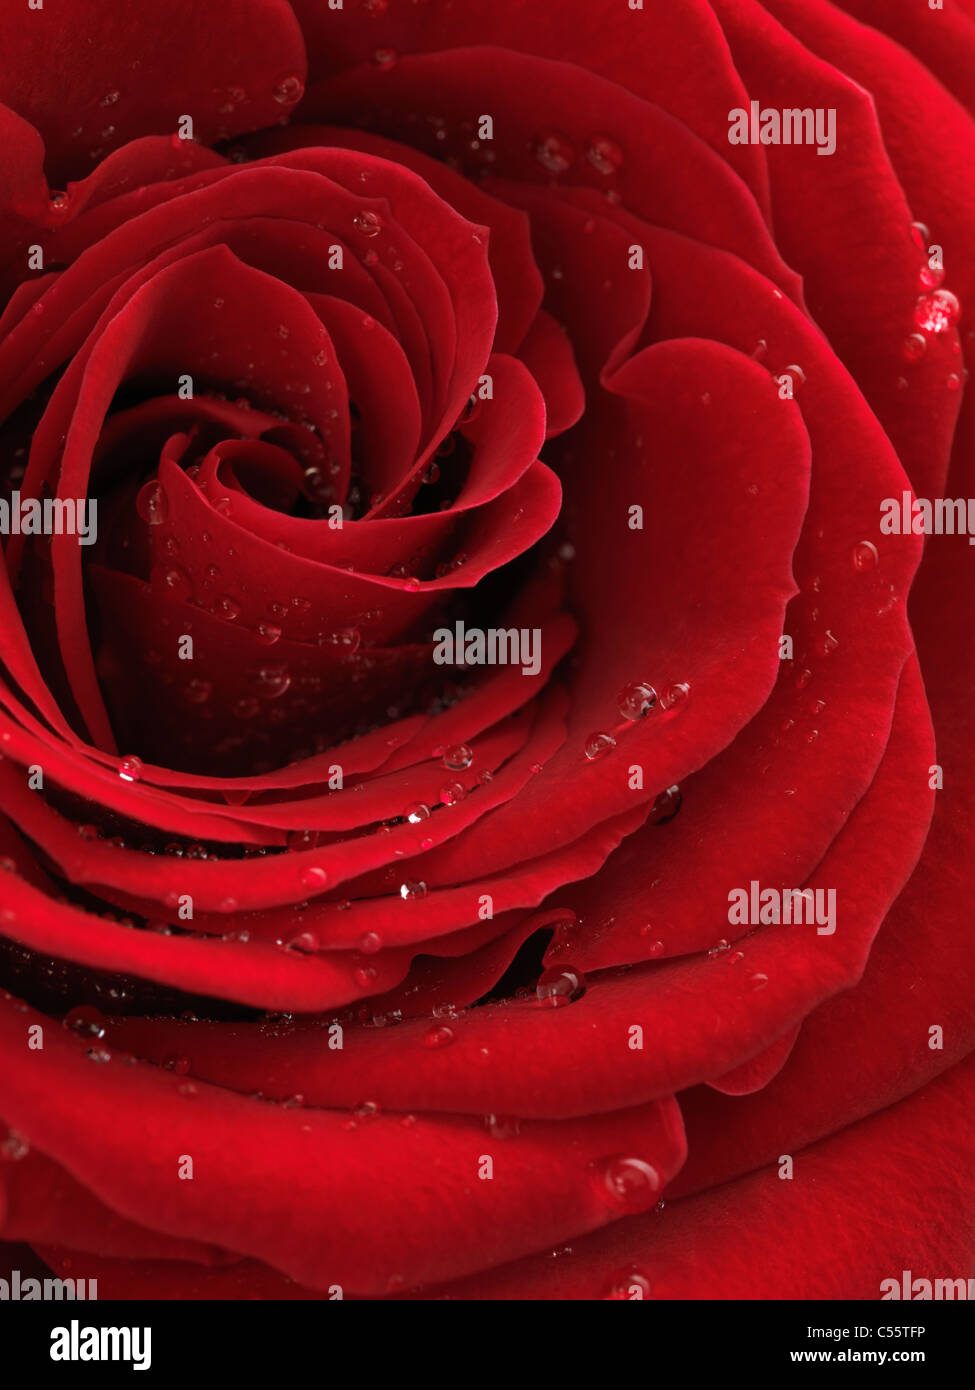 Photo Gros plan d'une belle rose rouge avec des gouttes d'eau sur ses pétales Banque D'Images